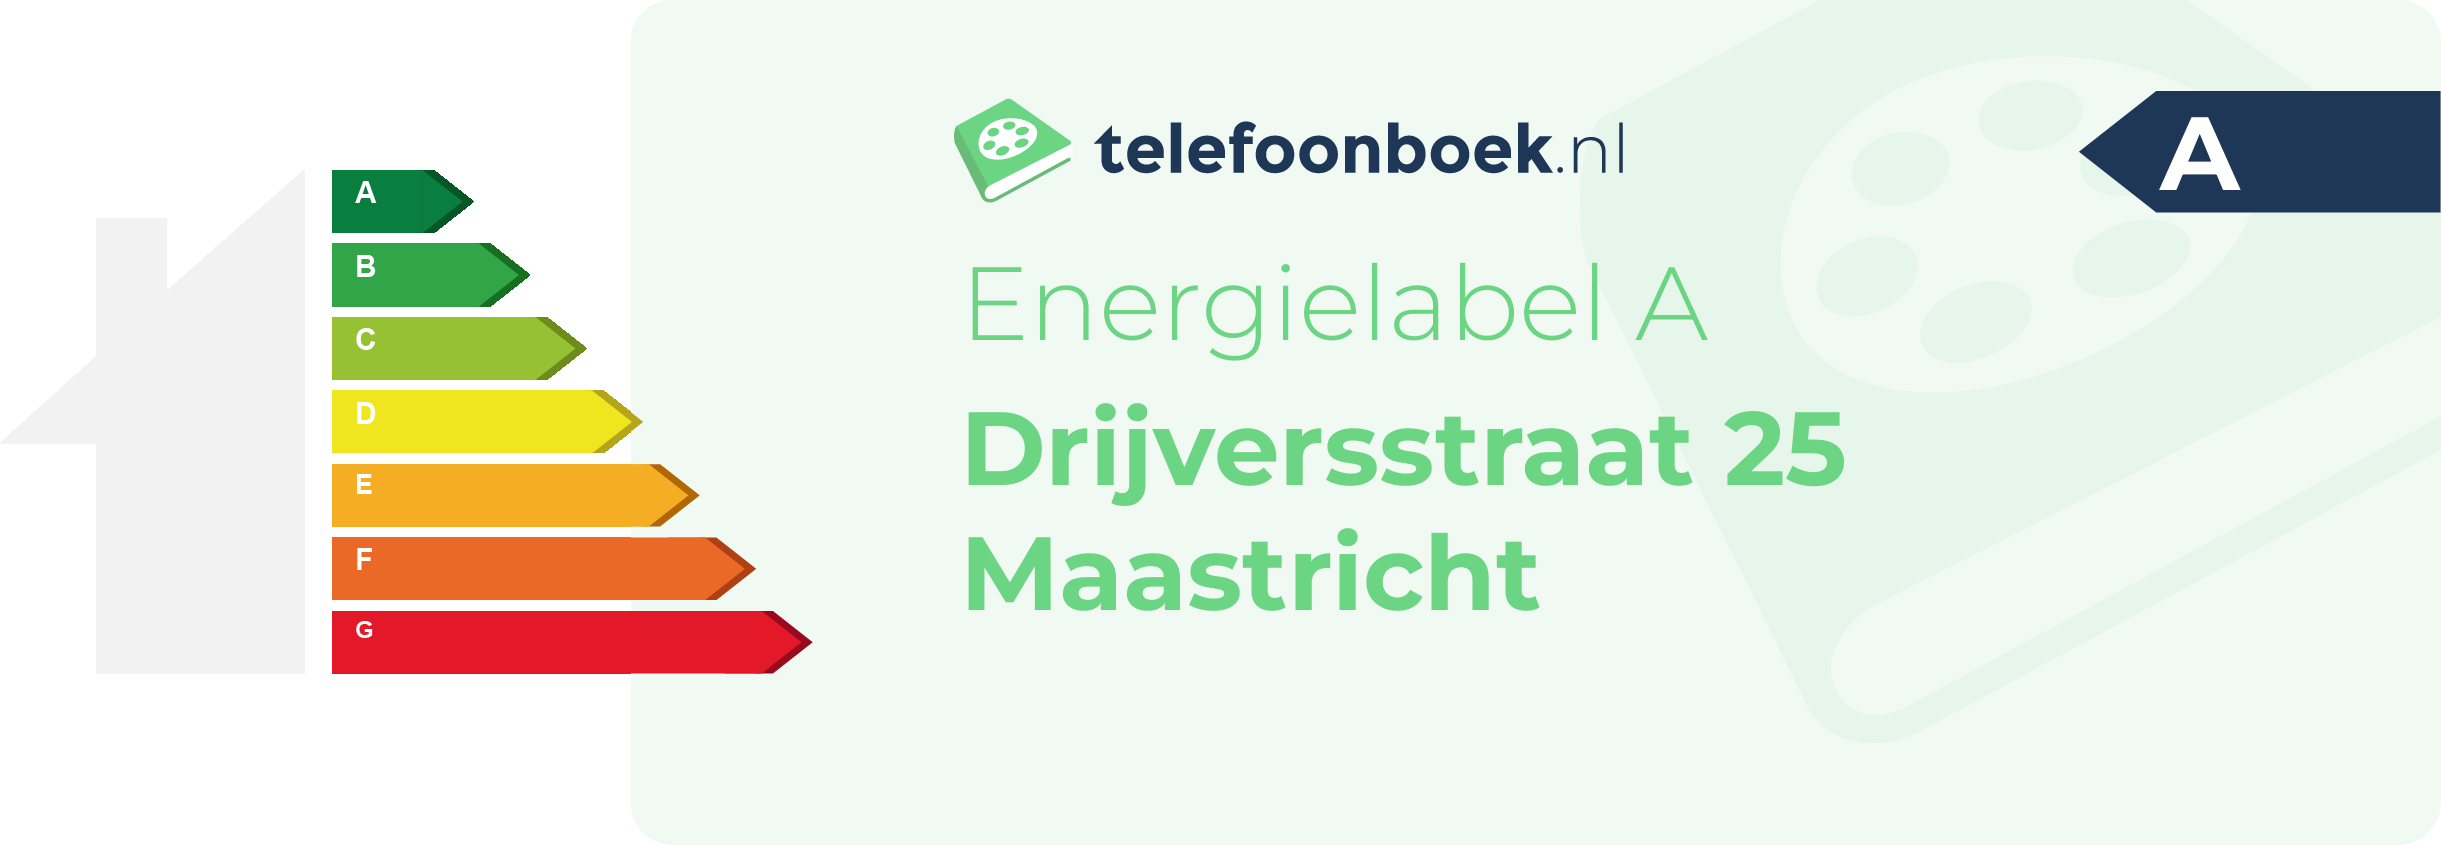 Energielabel Drijversstraat 25 Maastricht